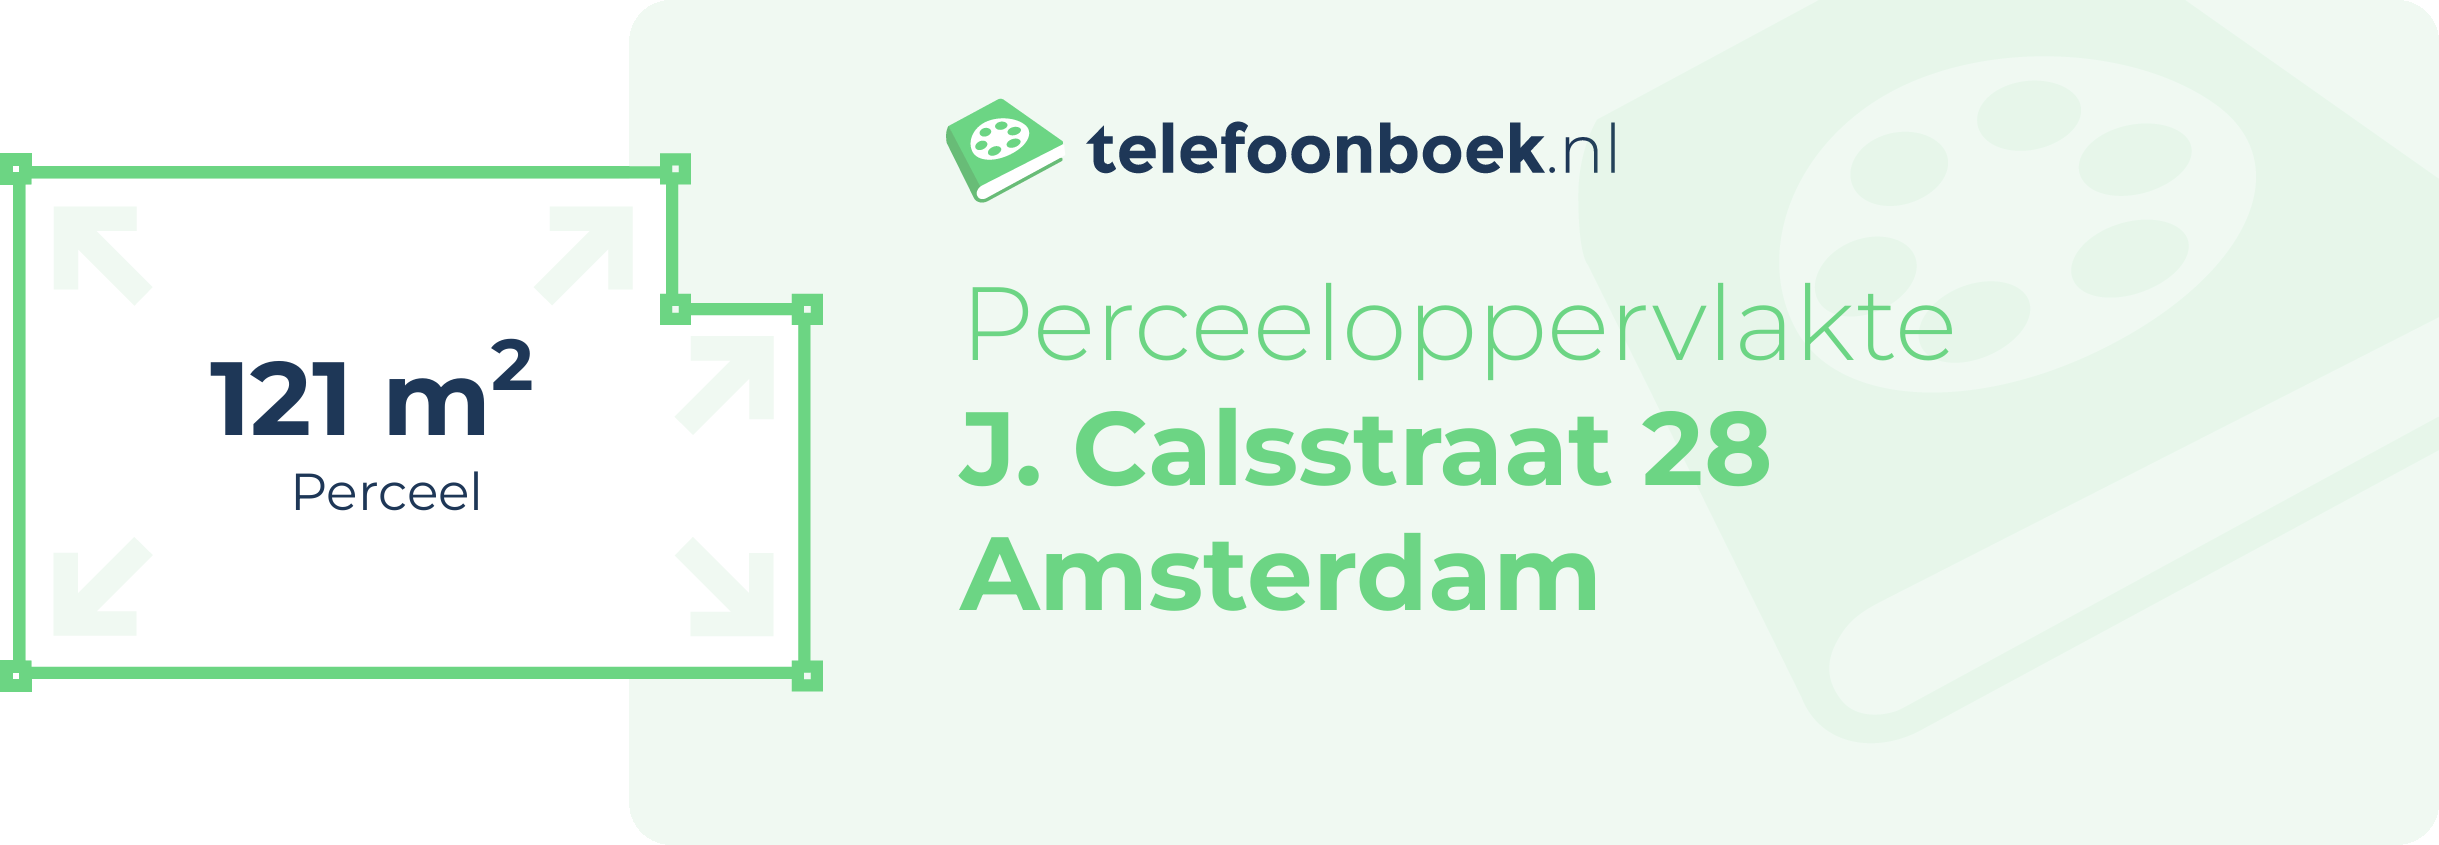 Perceeloppervlakte J. Calsstraat 28 Amsterdam